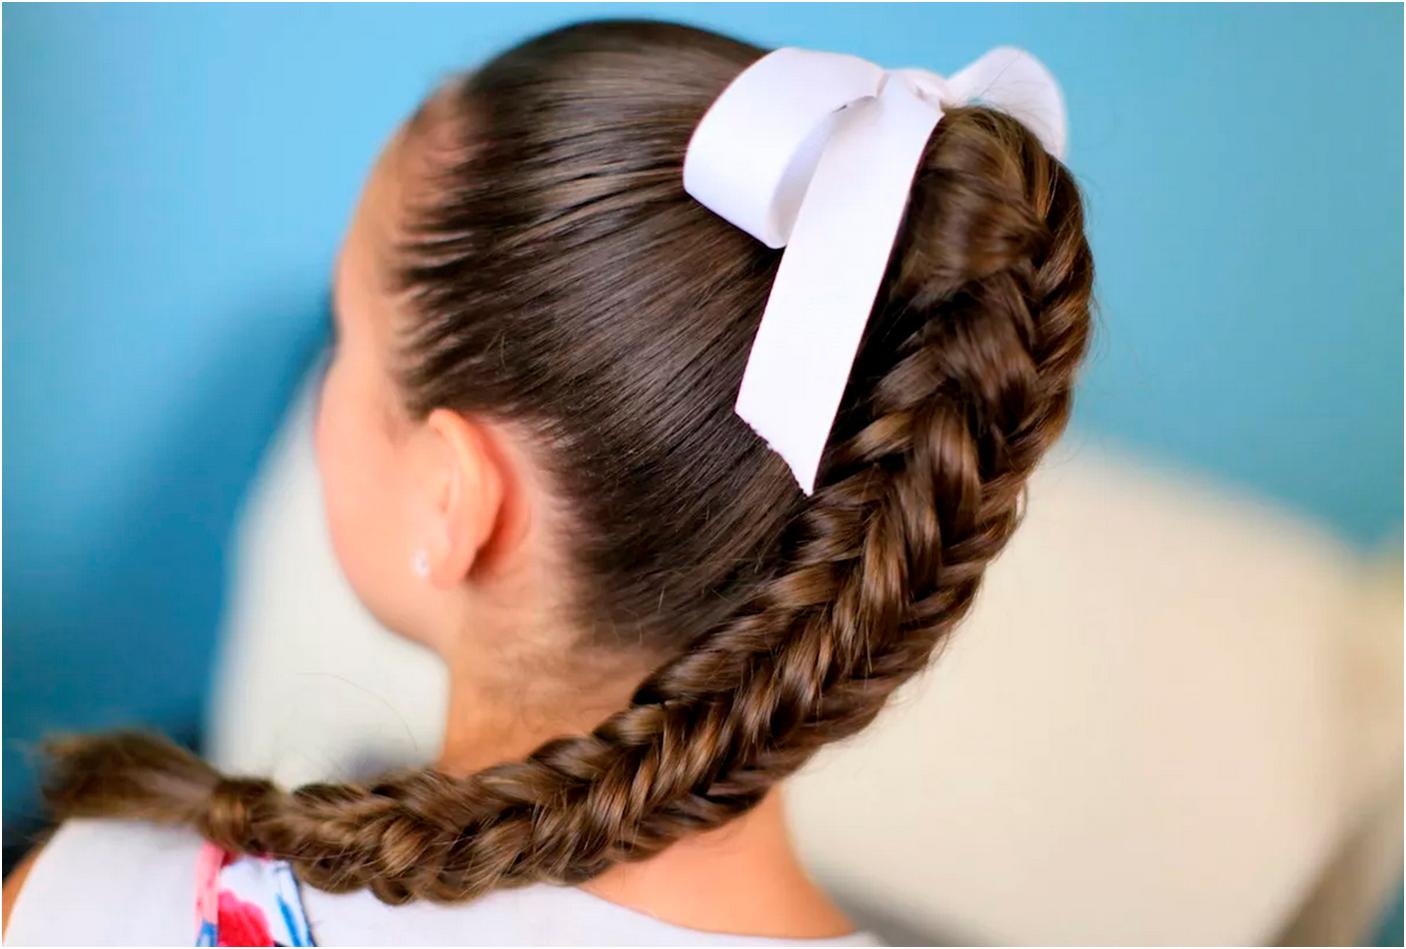 Прически в школу 1. Прически для девочек. Красивые причёски для девочек. Прически в школу. Причёски для девочек в школу.